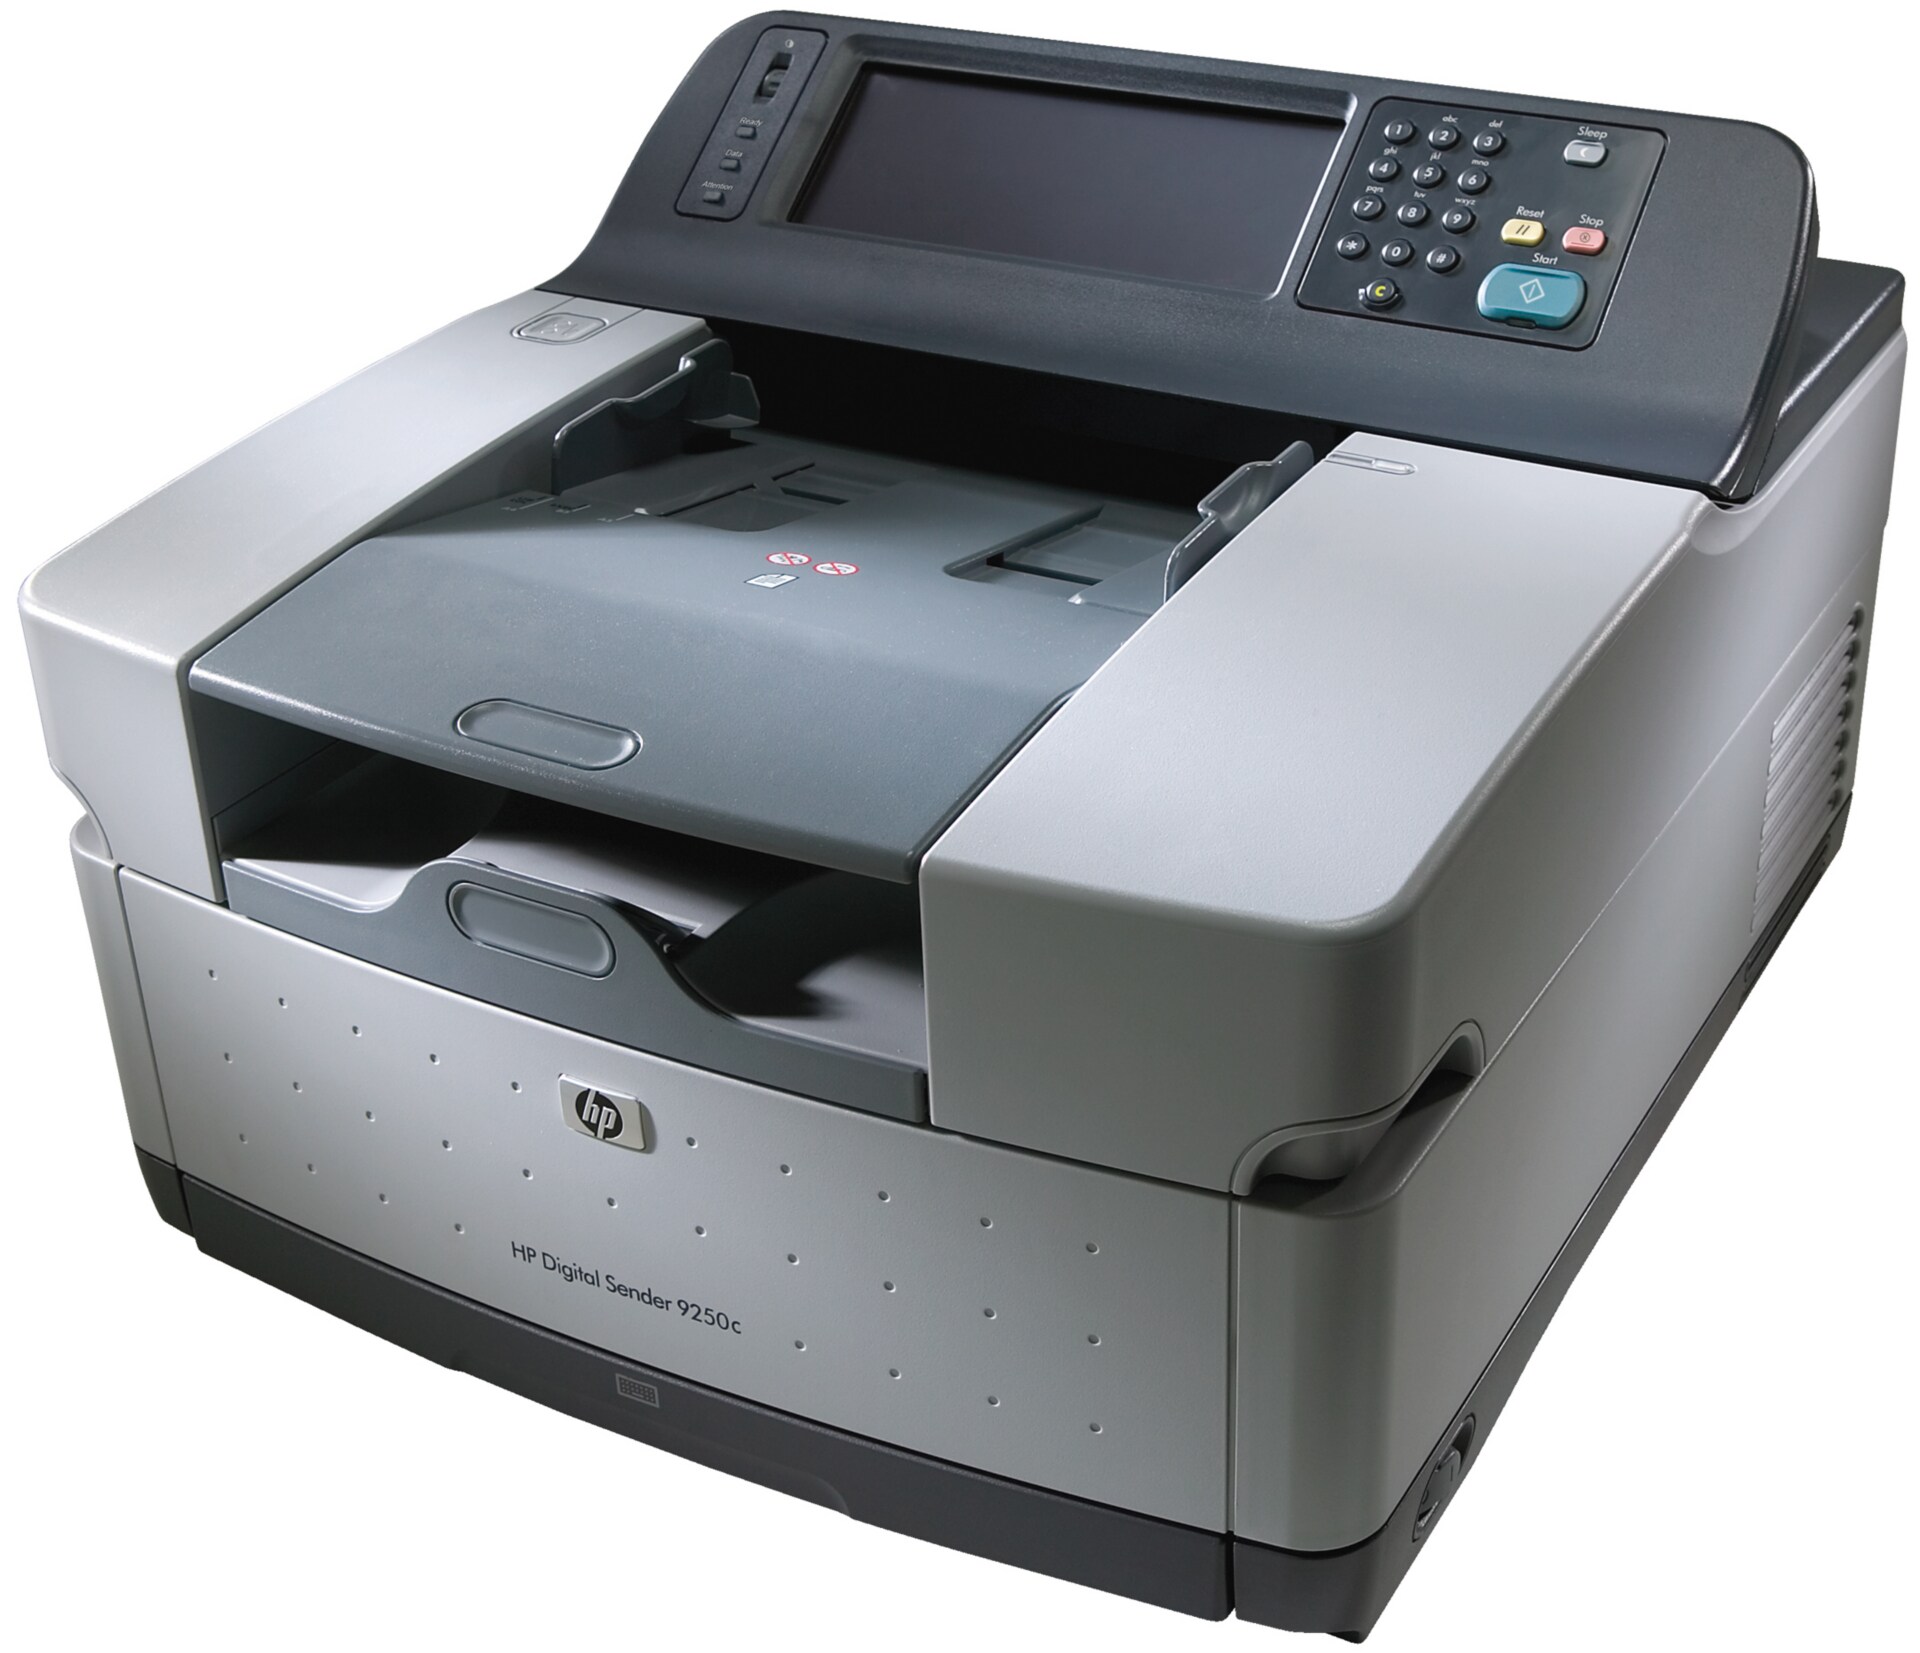 HP 9250c Digital Sender Scanner